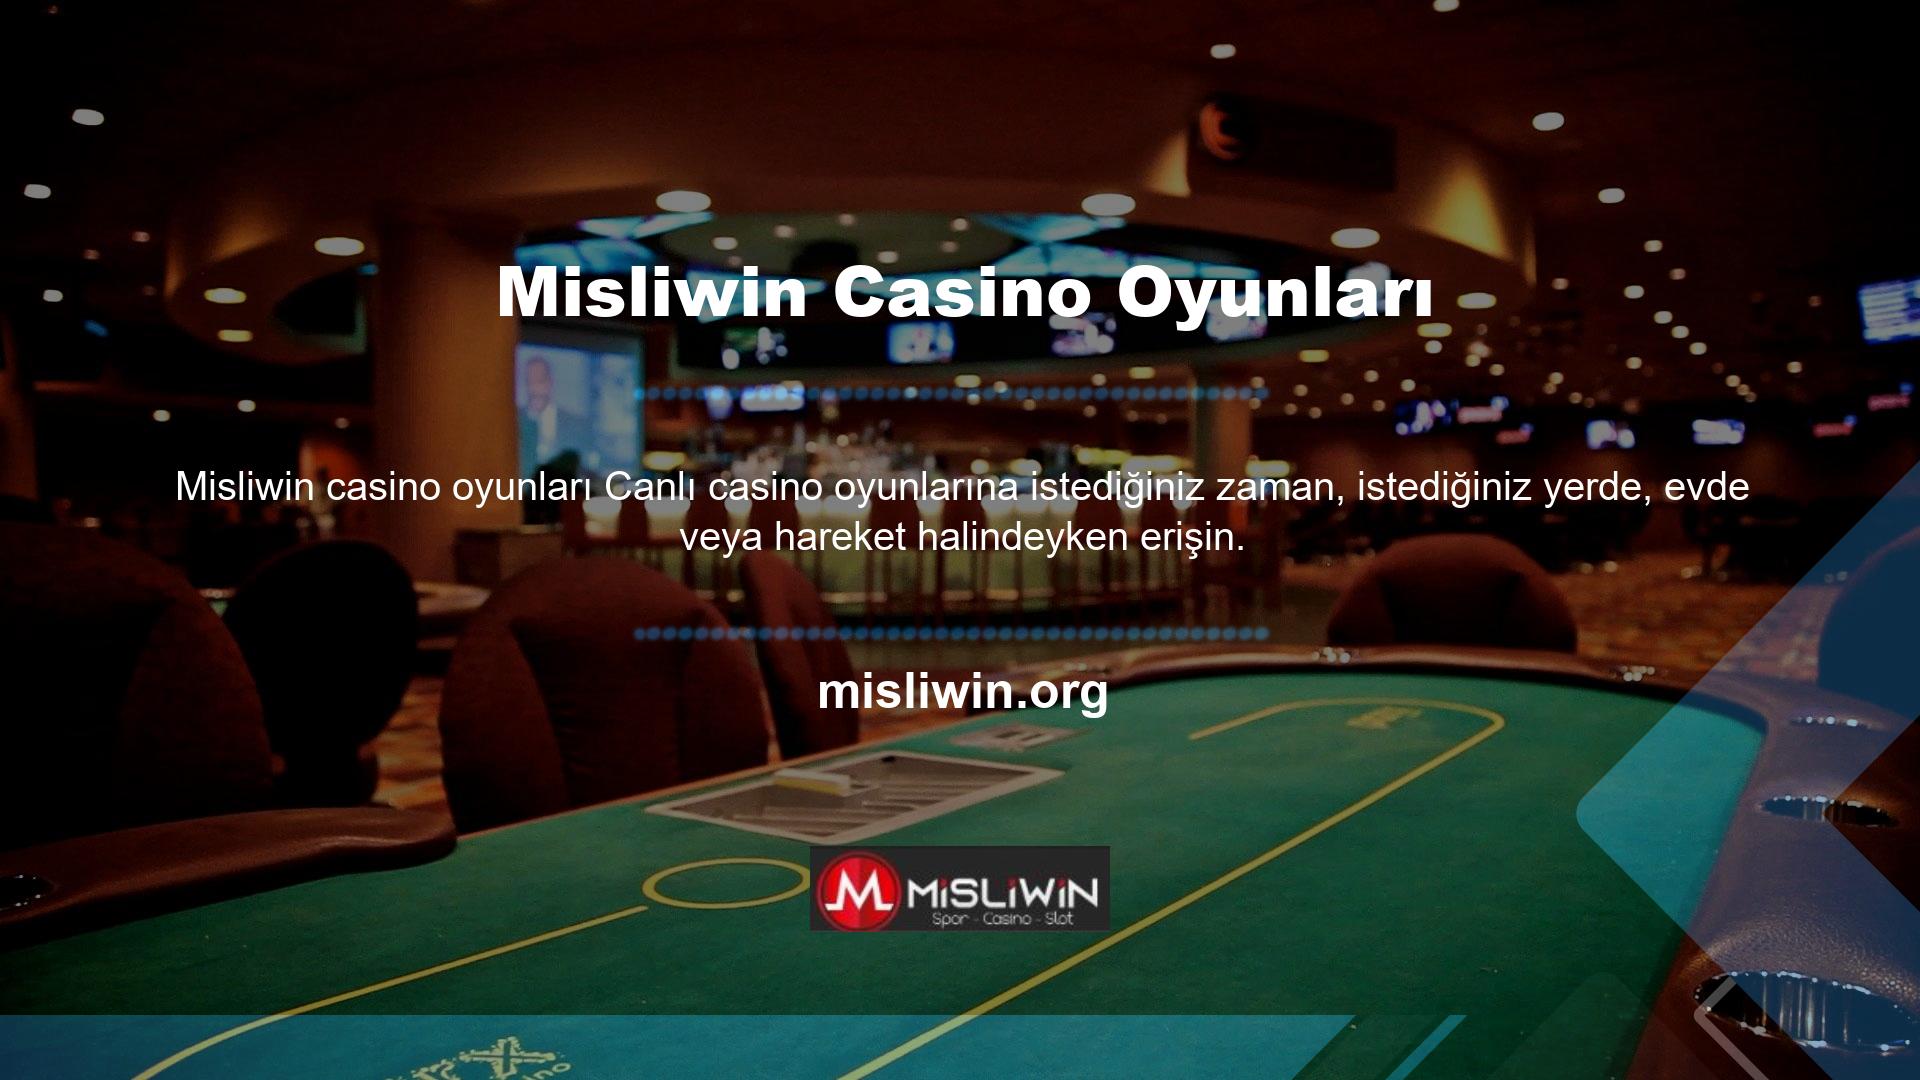 Üstelik casino bonusları ve Misliwin tarafından sunulan aktiviteler ile kazanma şansınızı arttırabilirsiniz